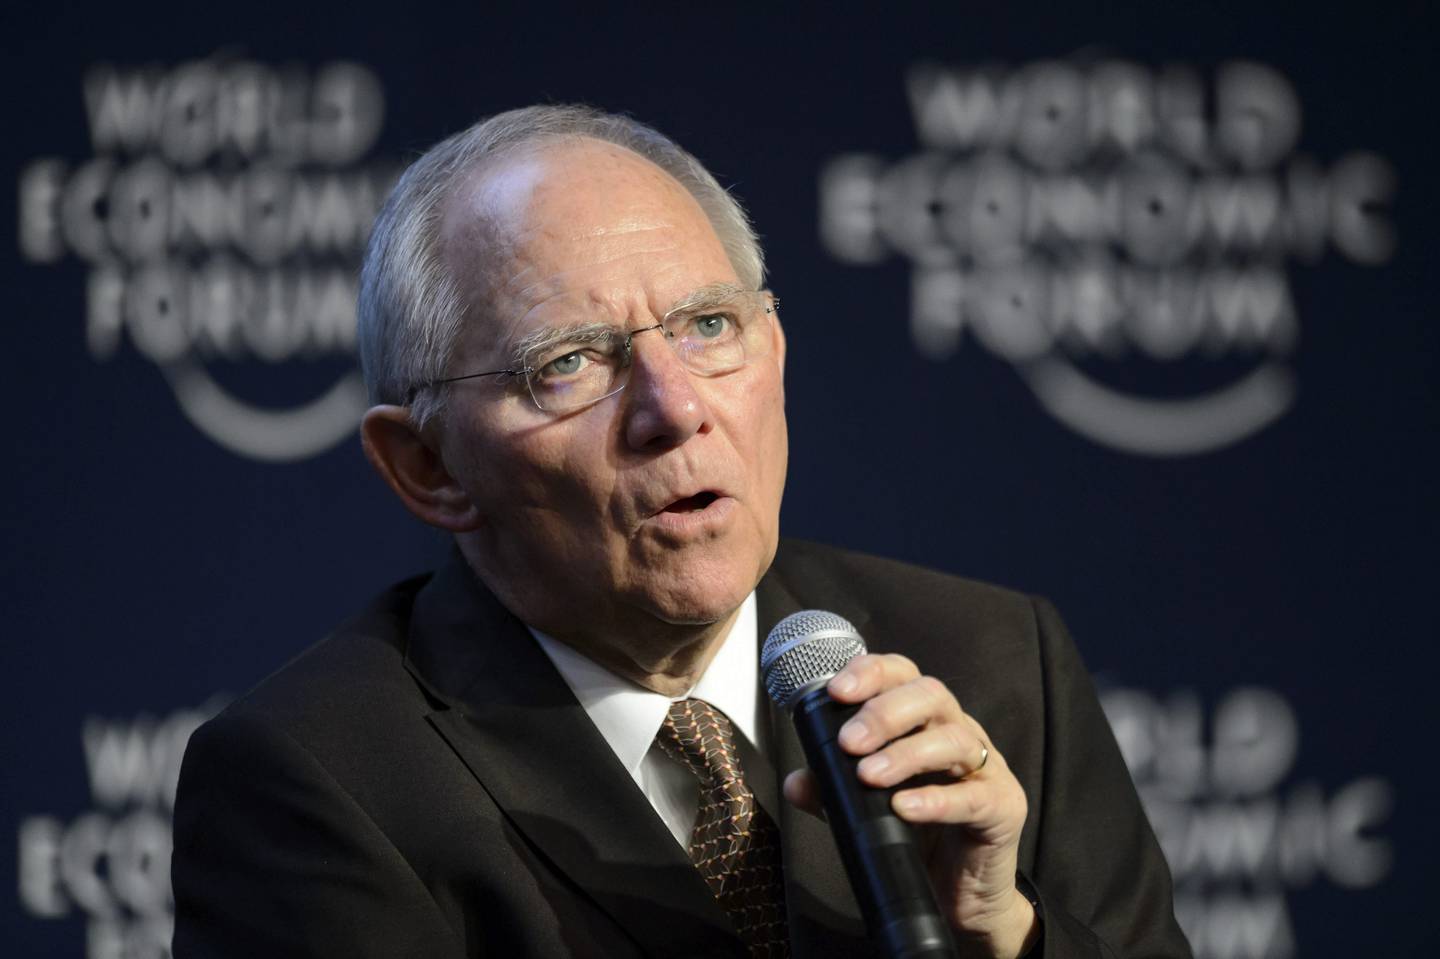 El ministro de Finanzas alemán, Wolfgang Schäuble, interviene en la tercera jornada del Foro Económico de Davos (Suiza), hoy, viernes 24 de enero de 2014.